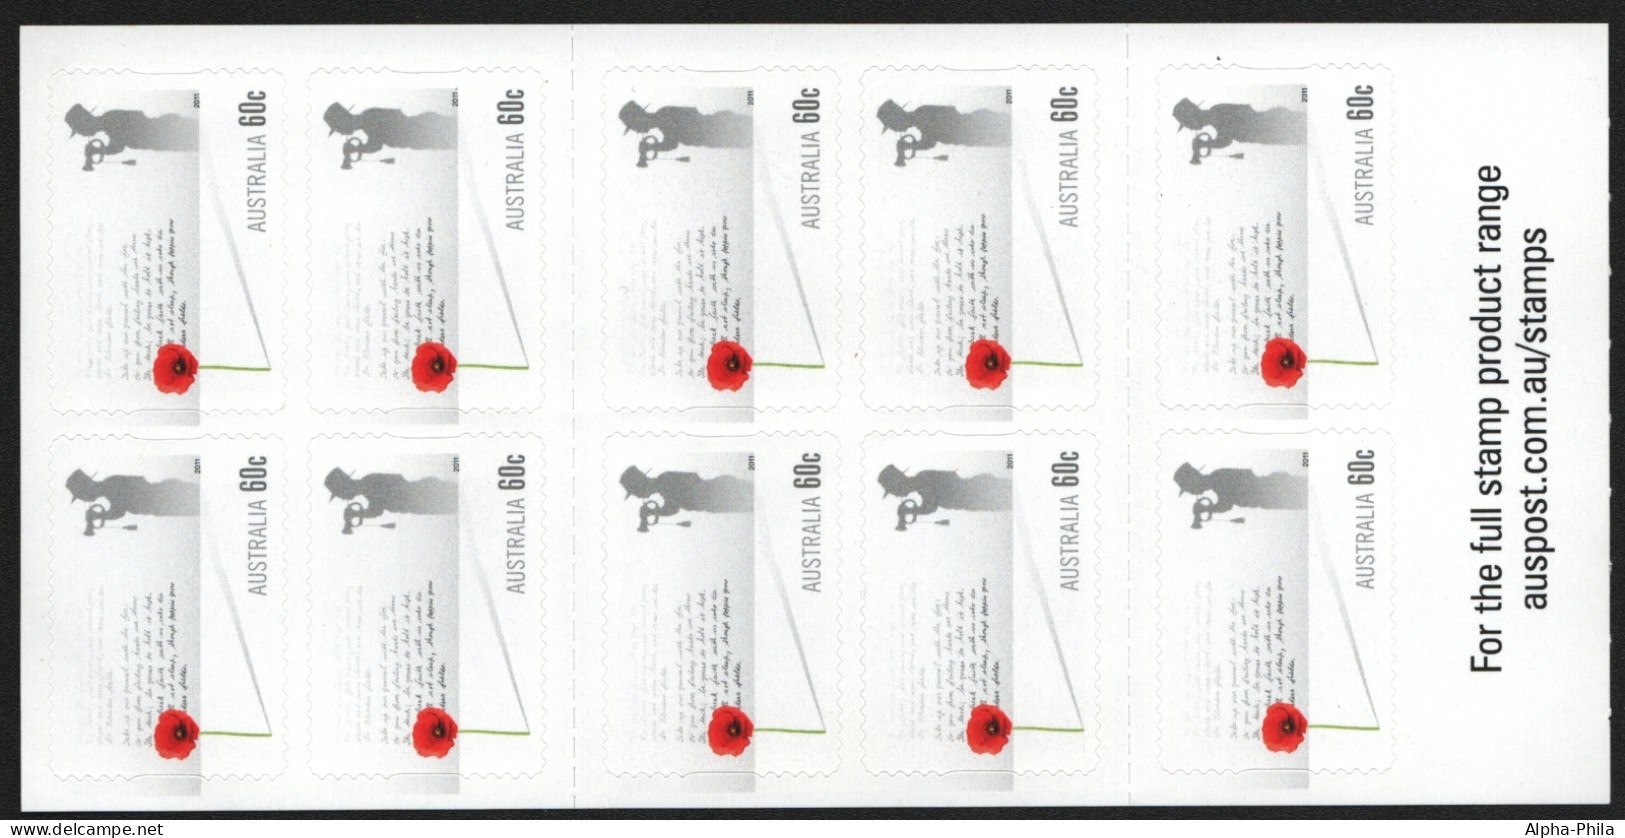 Australien 2011 - Mi-Nr. 3647 ** - MNH - Markenheft 498 - Gedenktag - Mint Stamps